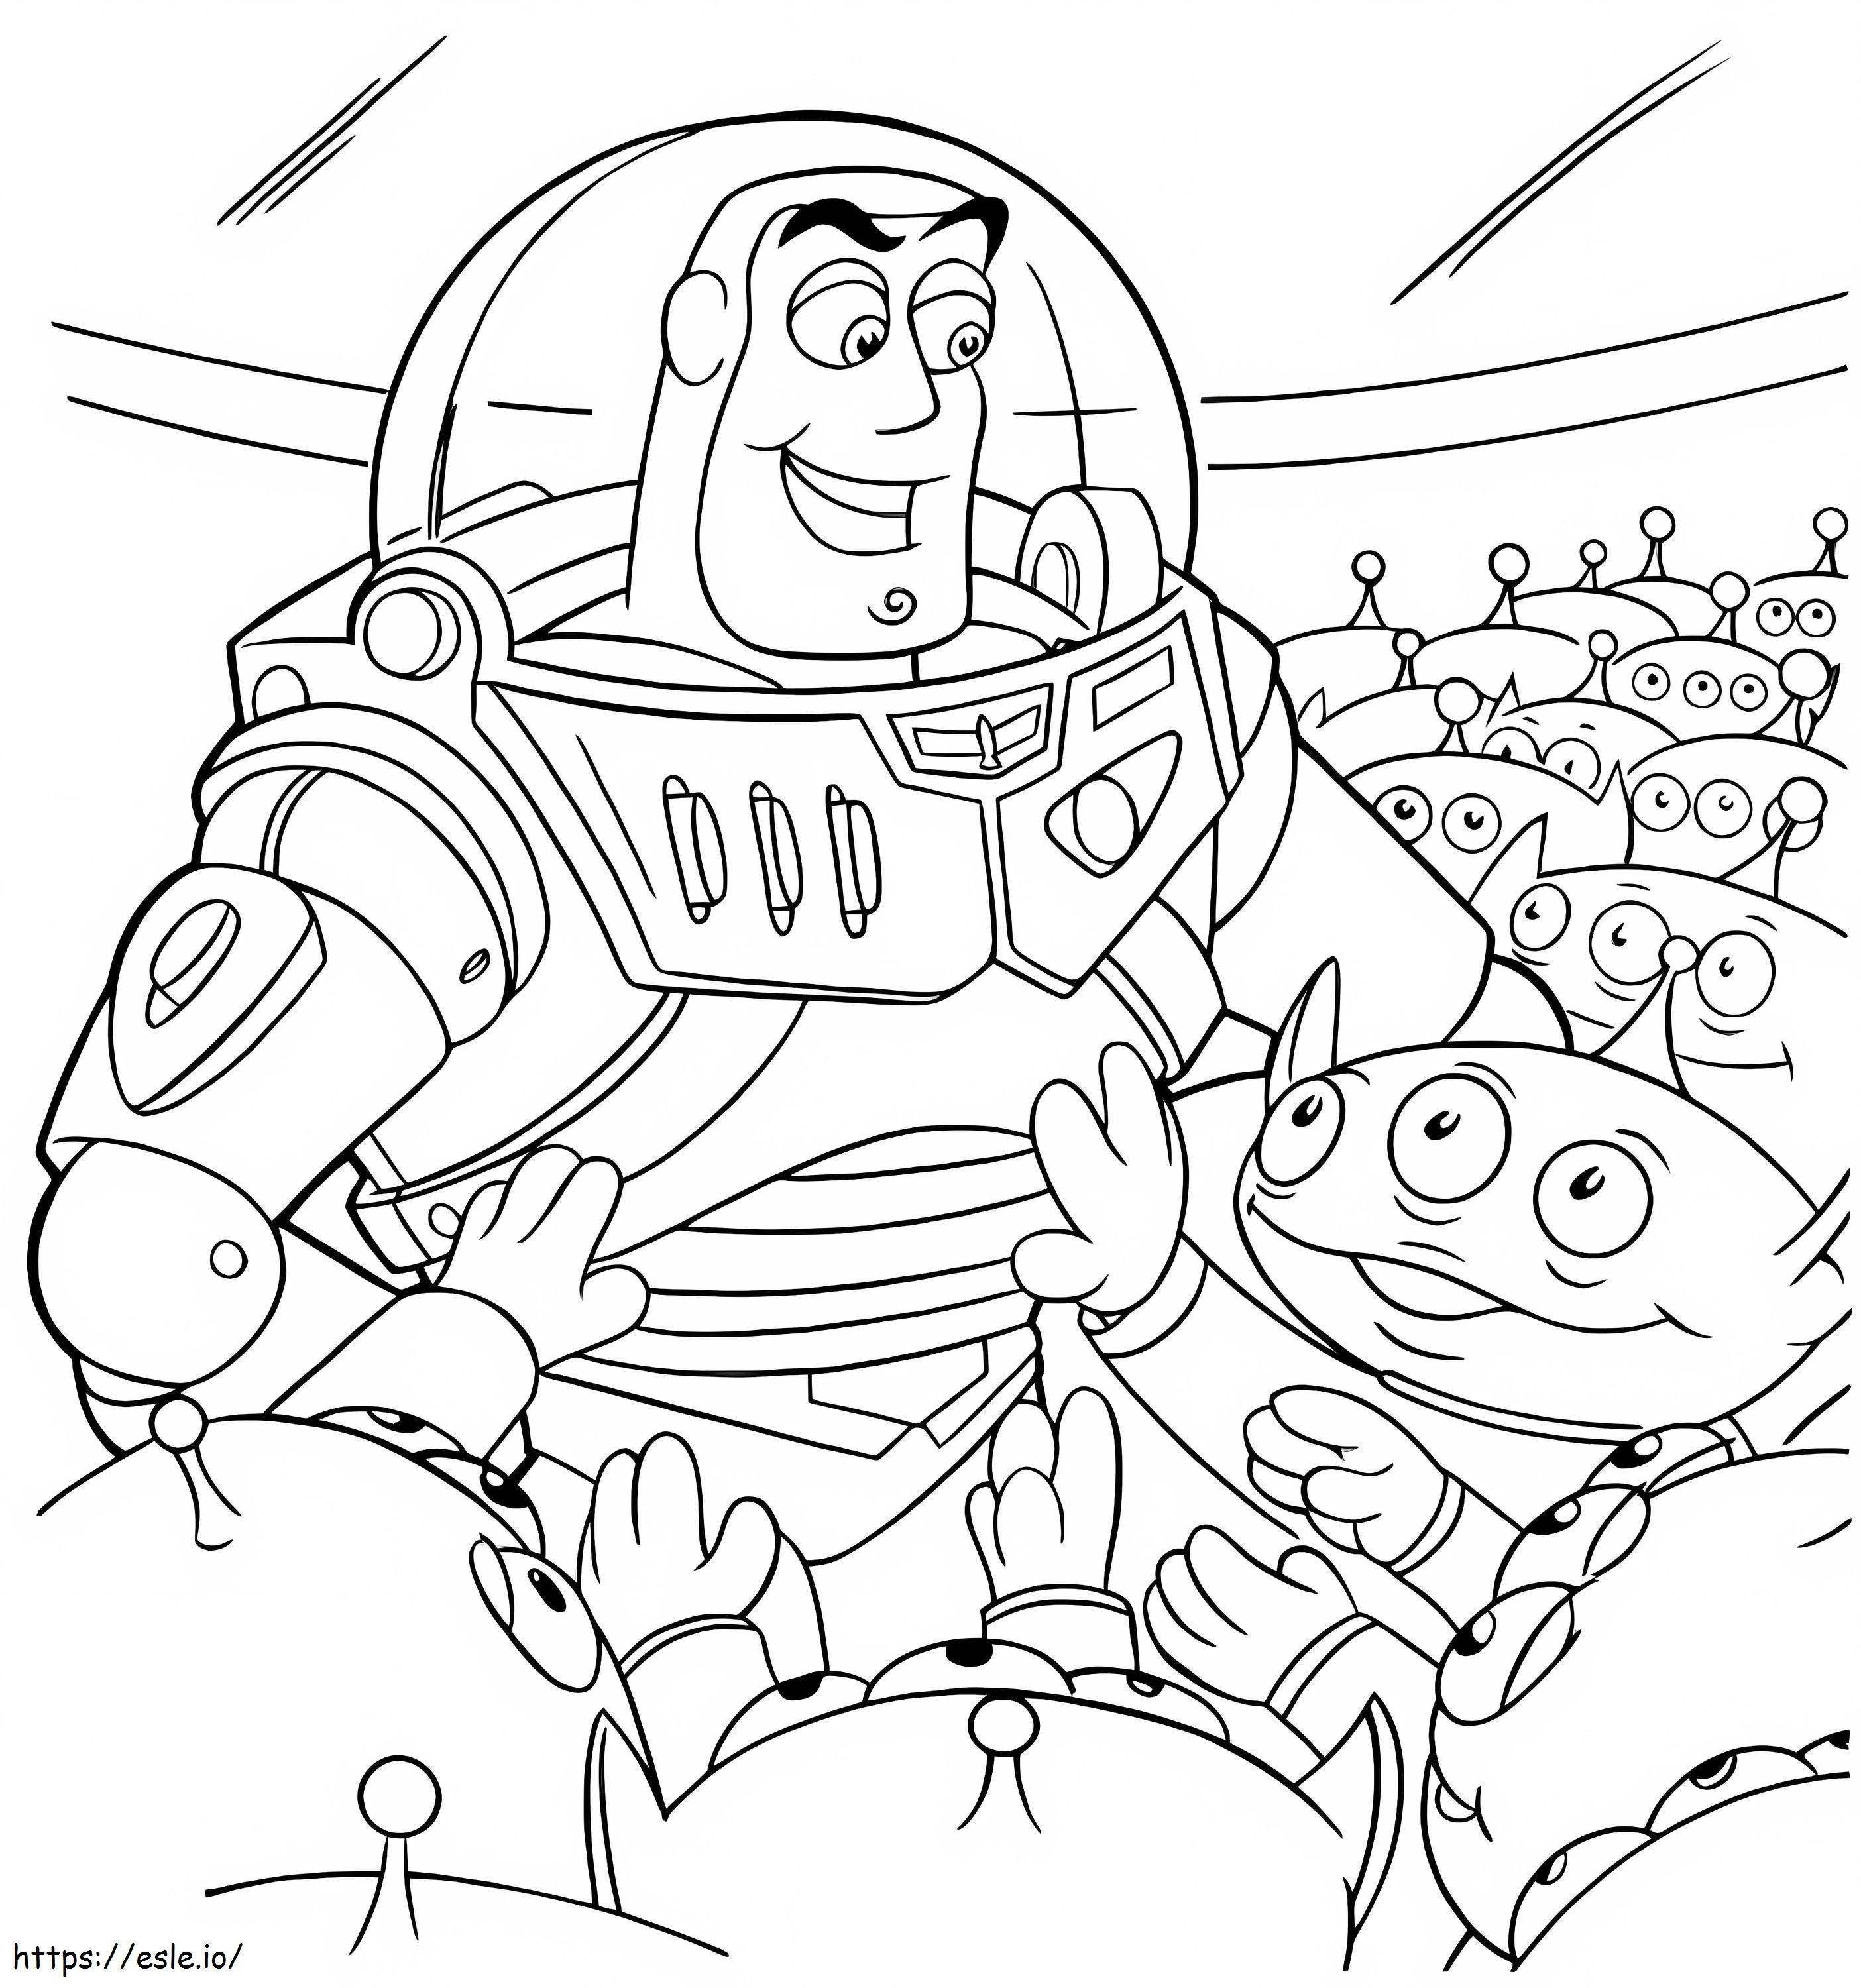 Buzz Lightyear i istoty pozaziemskie kolorowanka